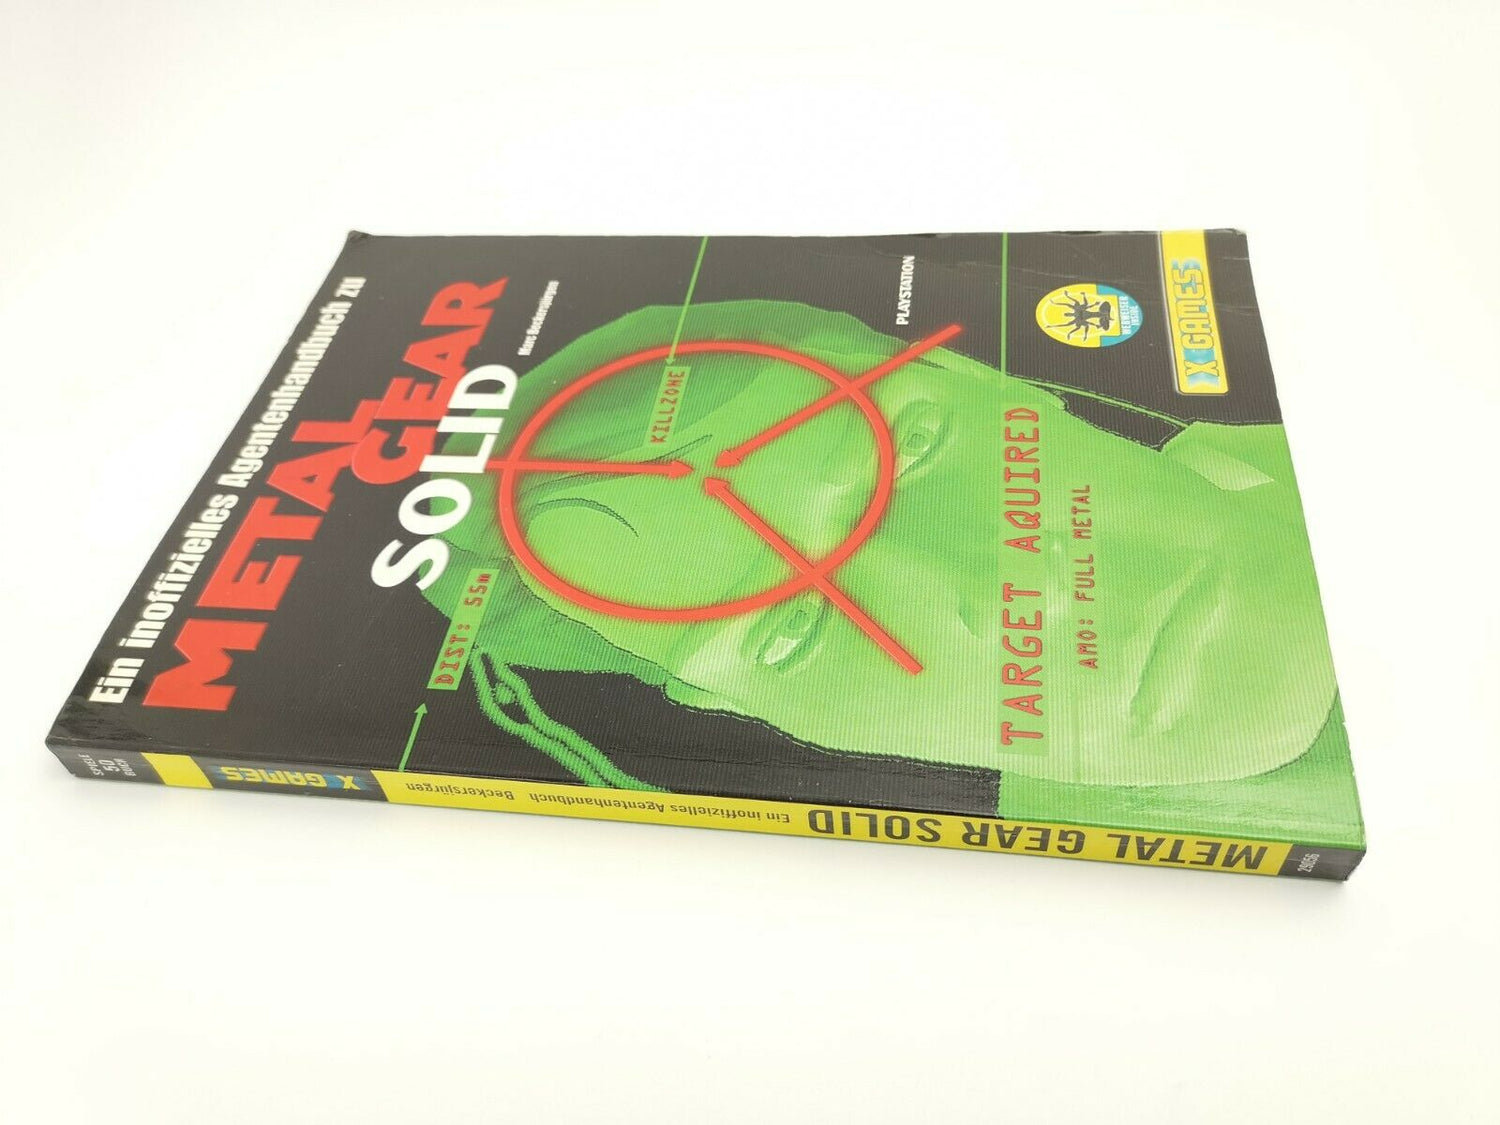 Ein inoffizielles Agentenhandbuch zu Metal Gear Solid |Ps1 | Guide | Lösungsbuch